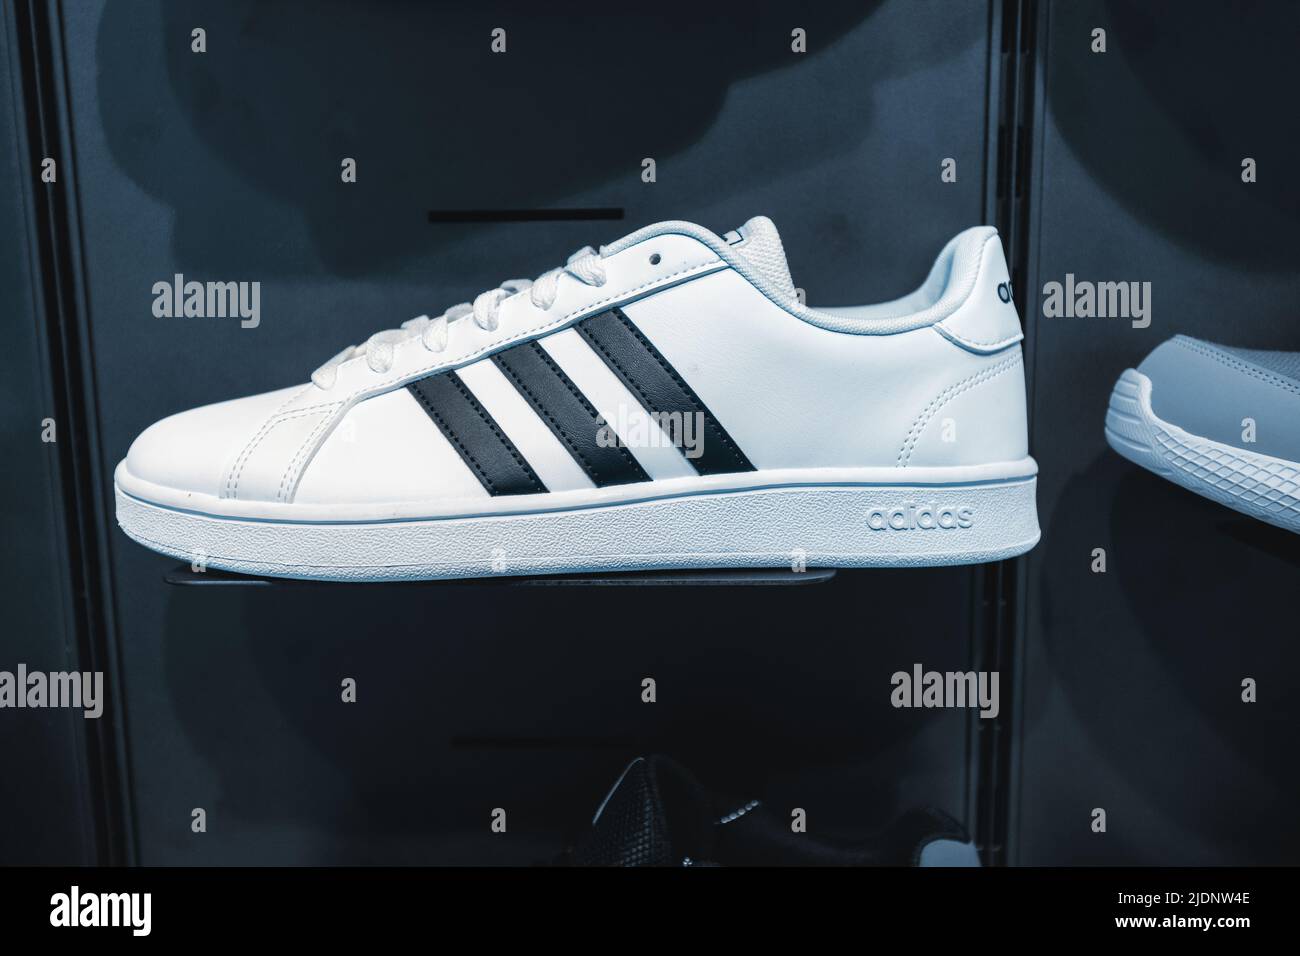 26. Mai 2022, Antalya, Türkei: Lässige und trendige adidas Schuhe auf einer  Vitrine im Originalgeschäft Stockfotografie - Alamy